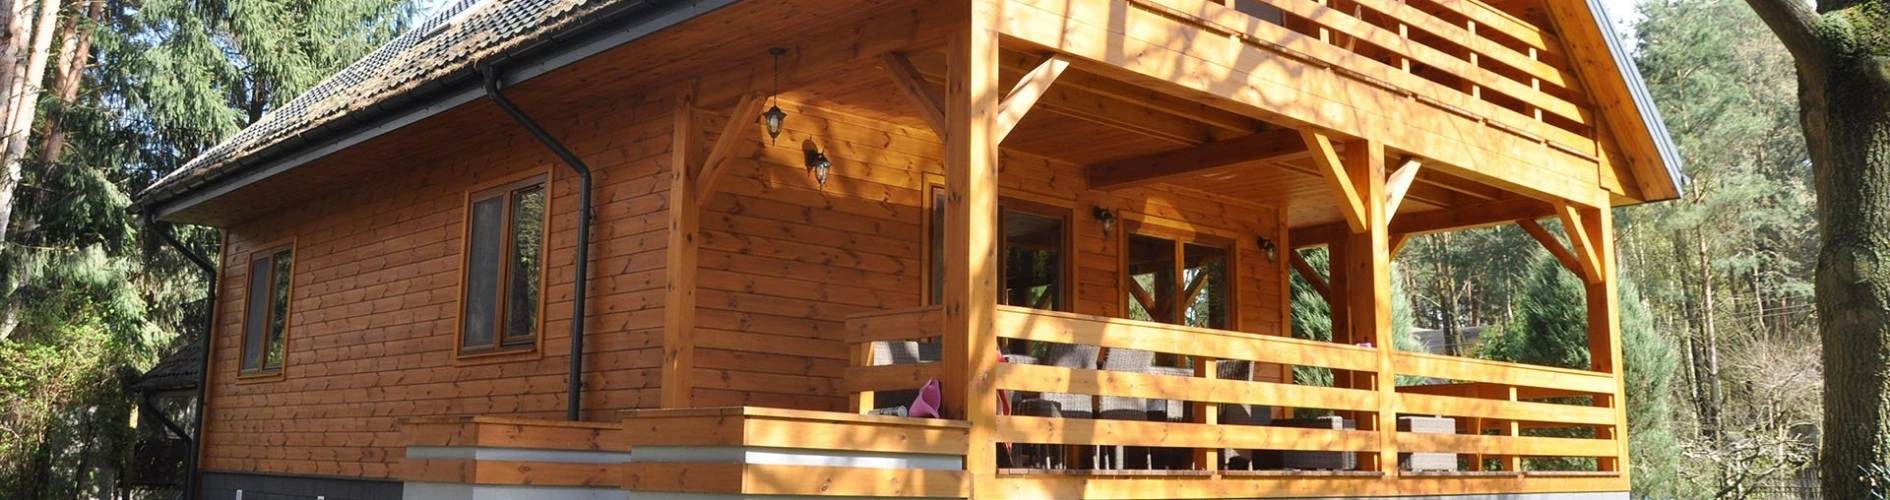 drewniany dom z ozdobnym tarasem